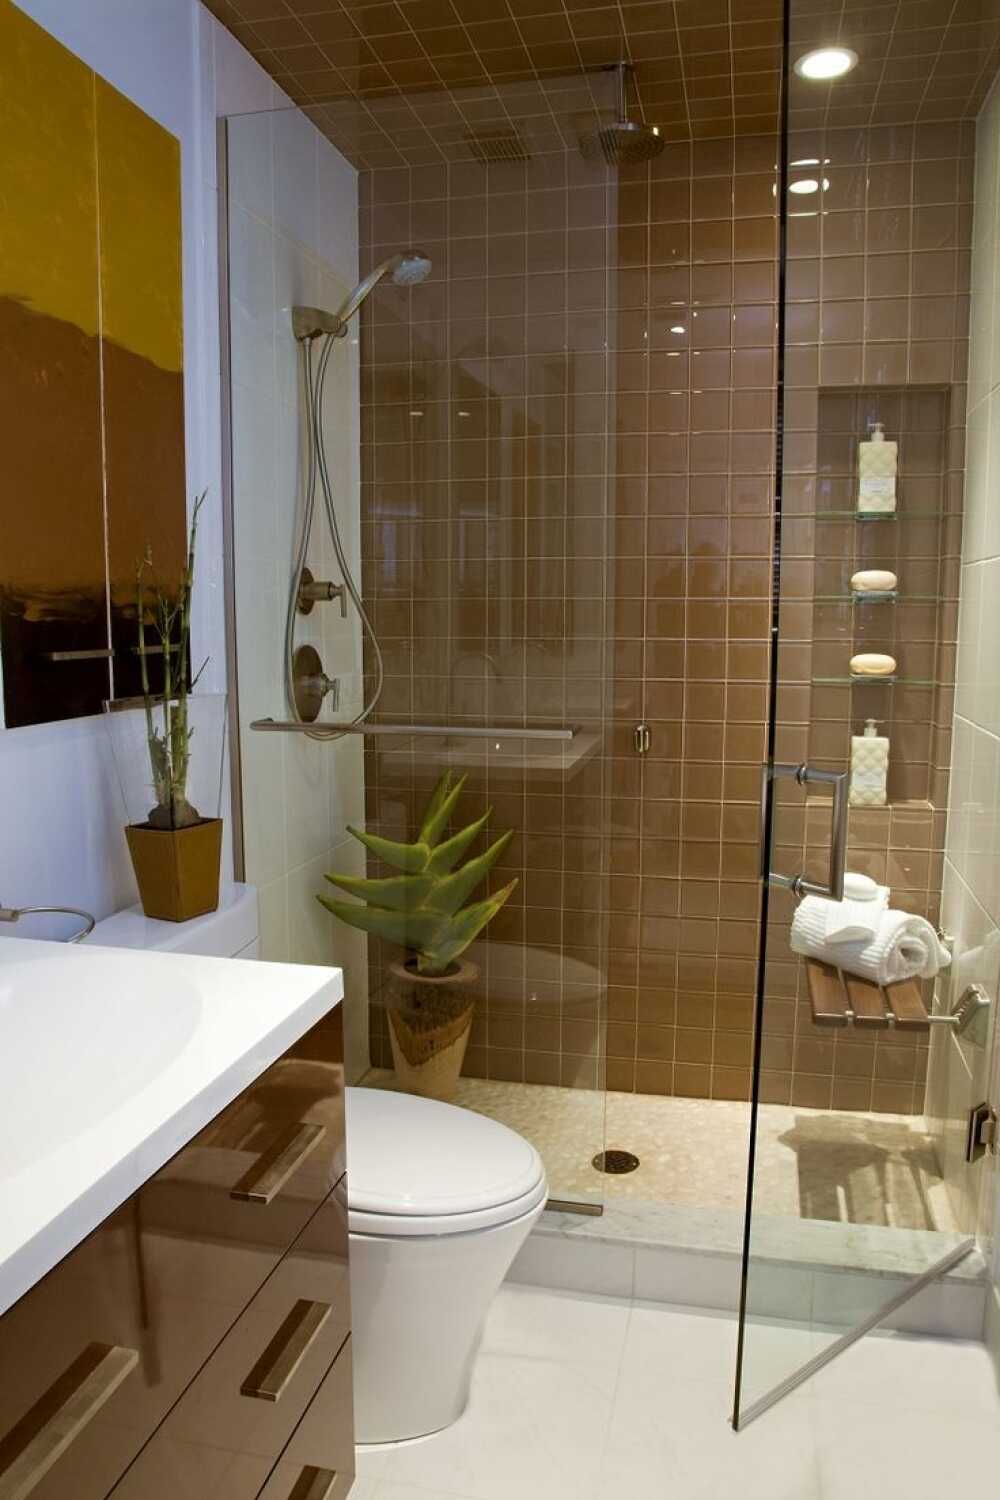 Thiết kế phòng tắm 6m2 đẹp sẽ giúp bạn tạo nên một không gian tắm tiện nghi và đẳng cấp, đáp ứng đầy đủ các yêu cầu của bạn về tính thẩm mỹ và tiện nghi. Các vật dụng nội thất thiết kế đặc biệt và tinh tế, sự kết hợp các màu sắc và vật liệu tạo nên một phong cách riêng biệt và đặc trưng. Hãy để chúng tôi giúp bạn tạo nên một phòng tắm đẹp nhất!